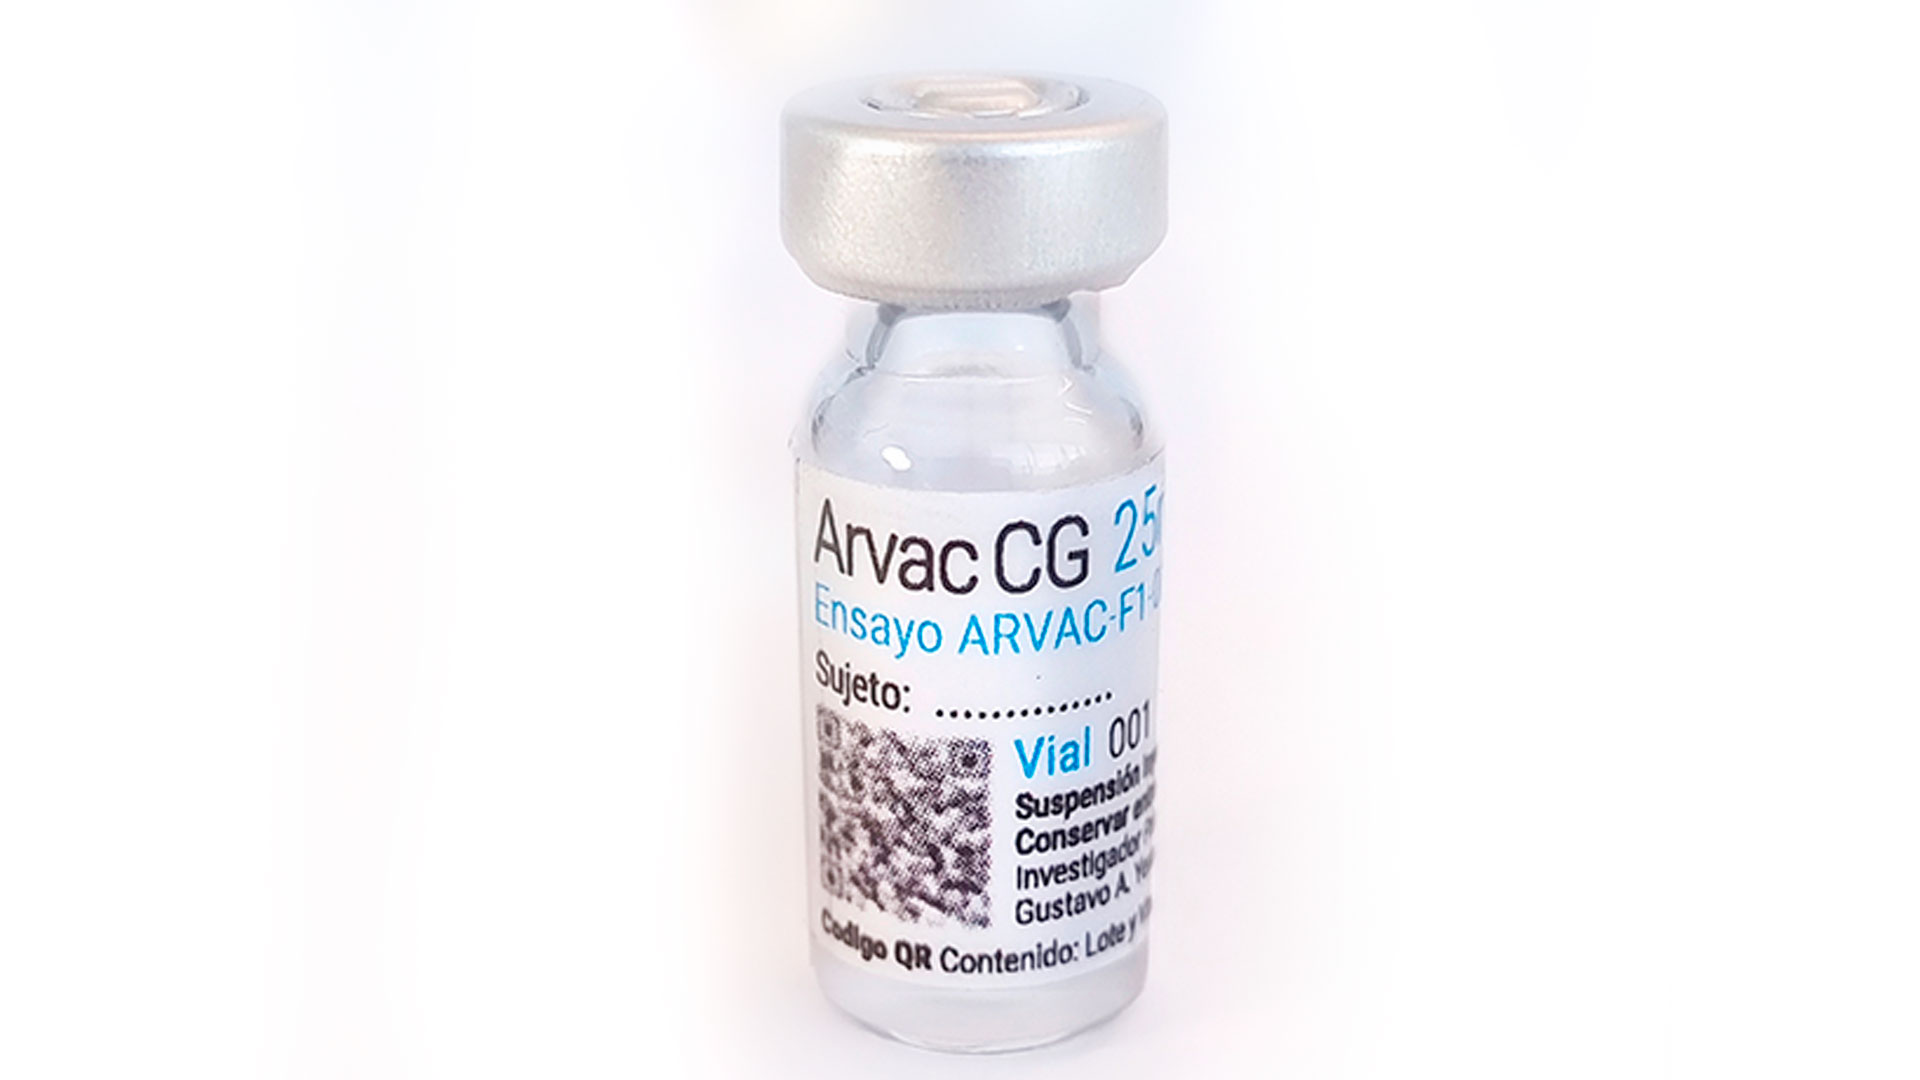 ARVAC-CG es la primera vacuna contra enfermedades infecciosas diseñada y desarrollada integralmente en Argentina logra completar los estudios clínicos de Fase I y avanzar a Fase II/III